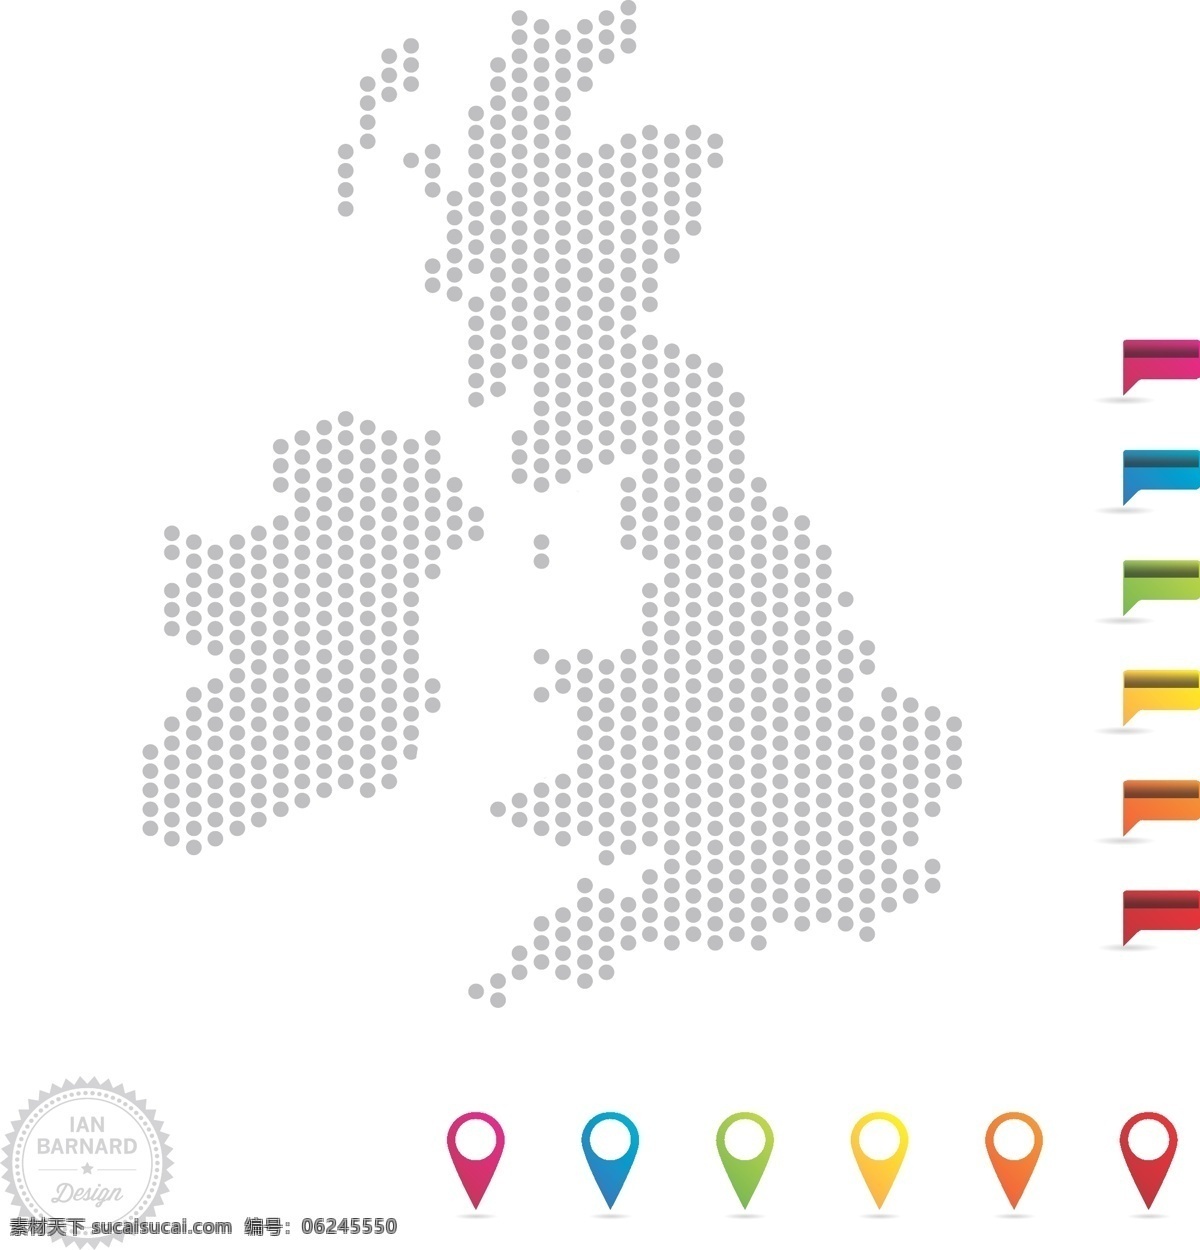 星罗棋布 英国 地图 指针 向量 集 web 插画 创意 高分辨率 接口 免费 元素 病 媒 生物 时尚 独特的 原始的 高质量 设计新的 ui元素 hd 详细的 地图的指针 地图图钉 丰富多彩的 地图销套 英国地图 加点地图 英格兰 人工智能 ui 矢量图